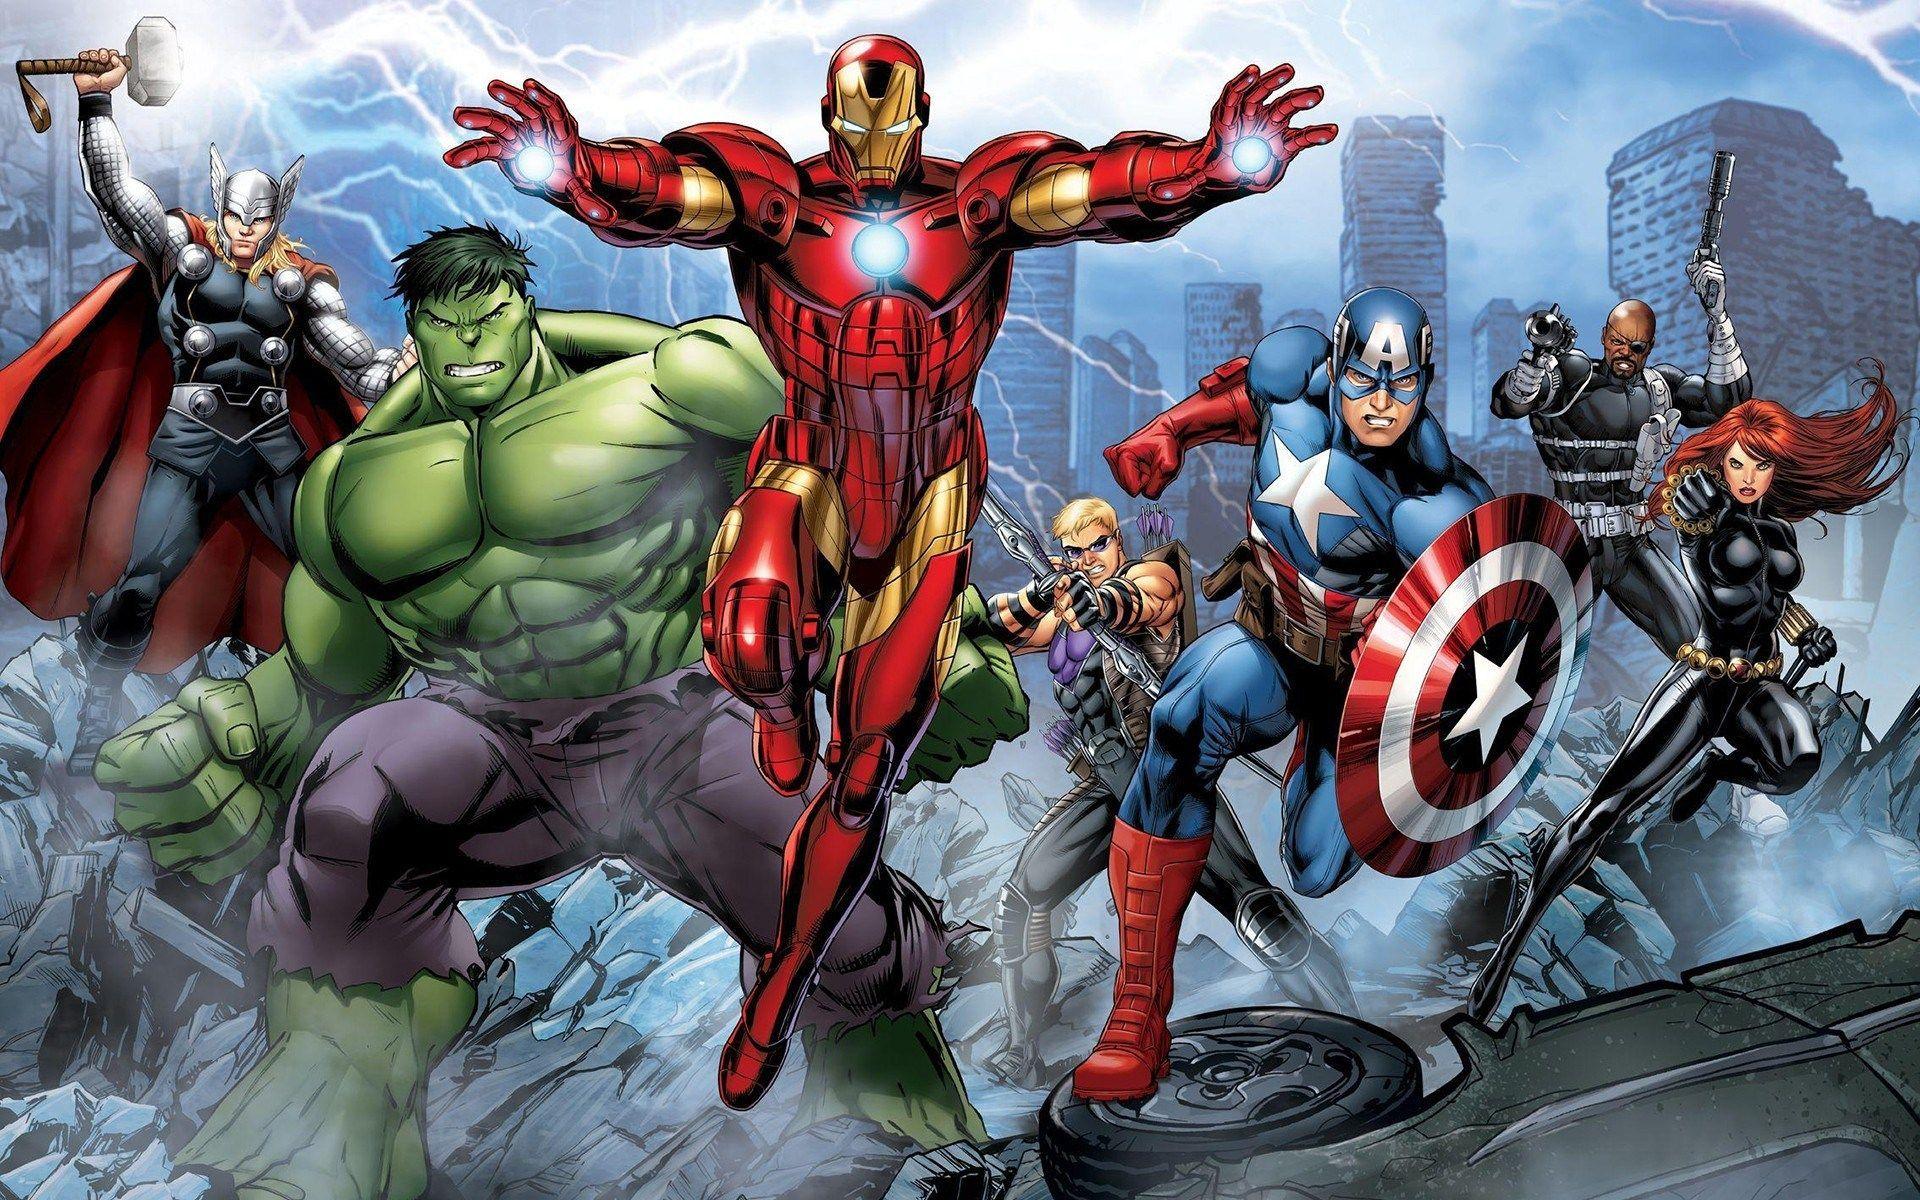 The Avengers Assemble Cartoon HD Wallpaper. Free Wallpaper